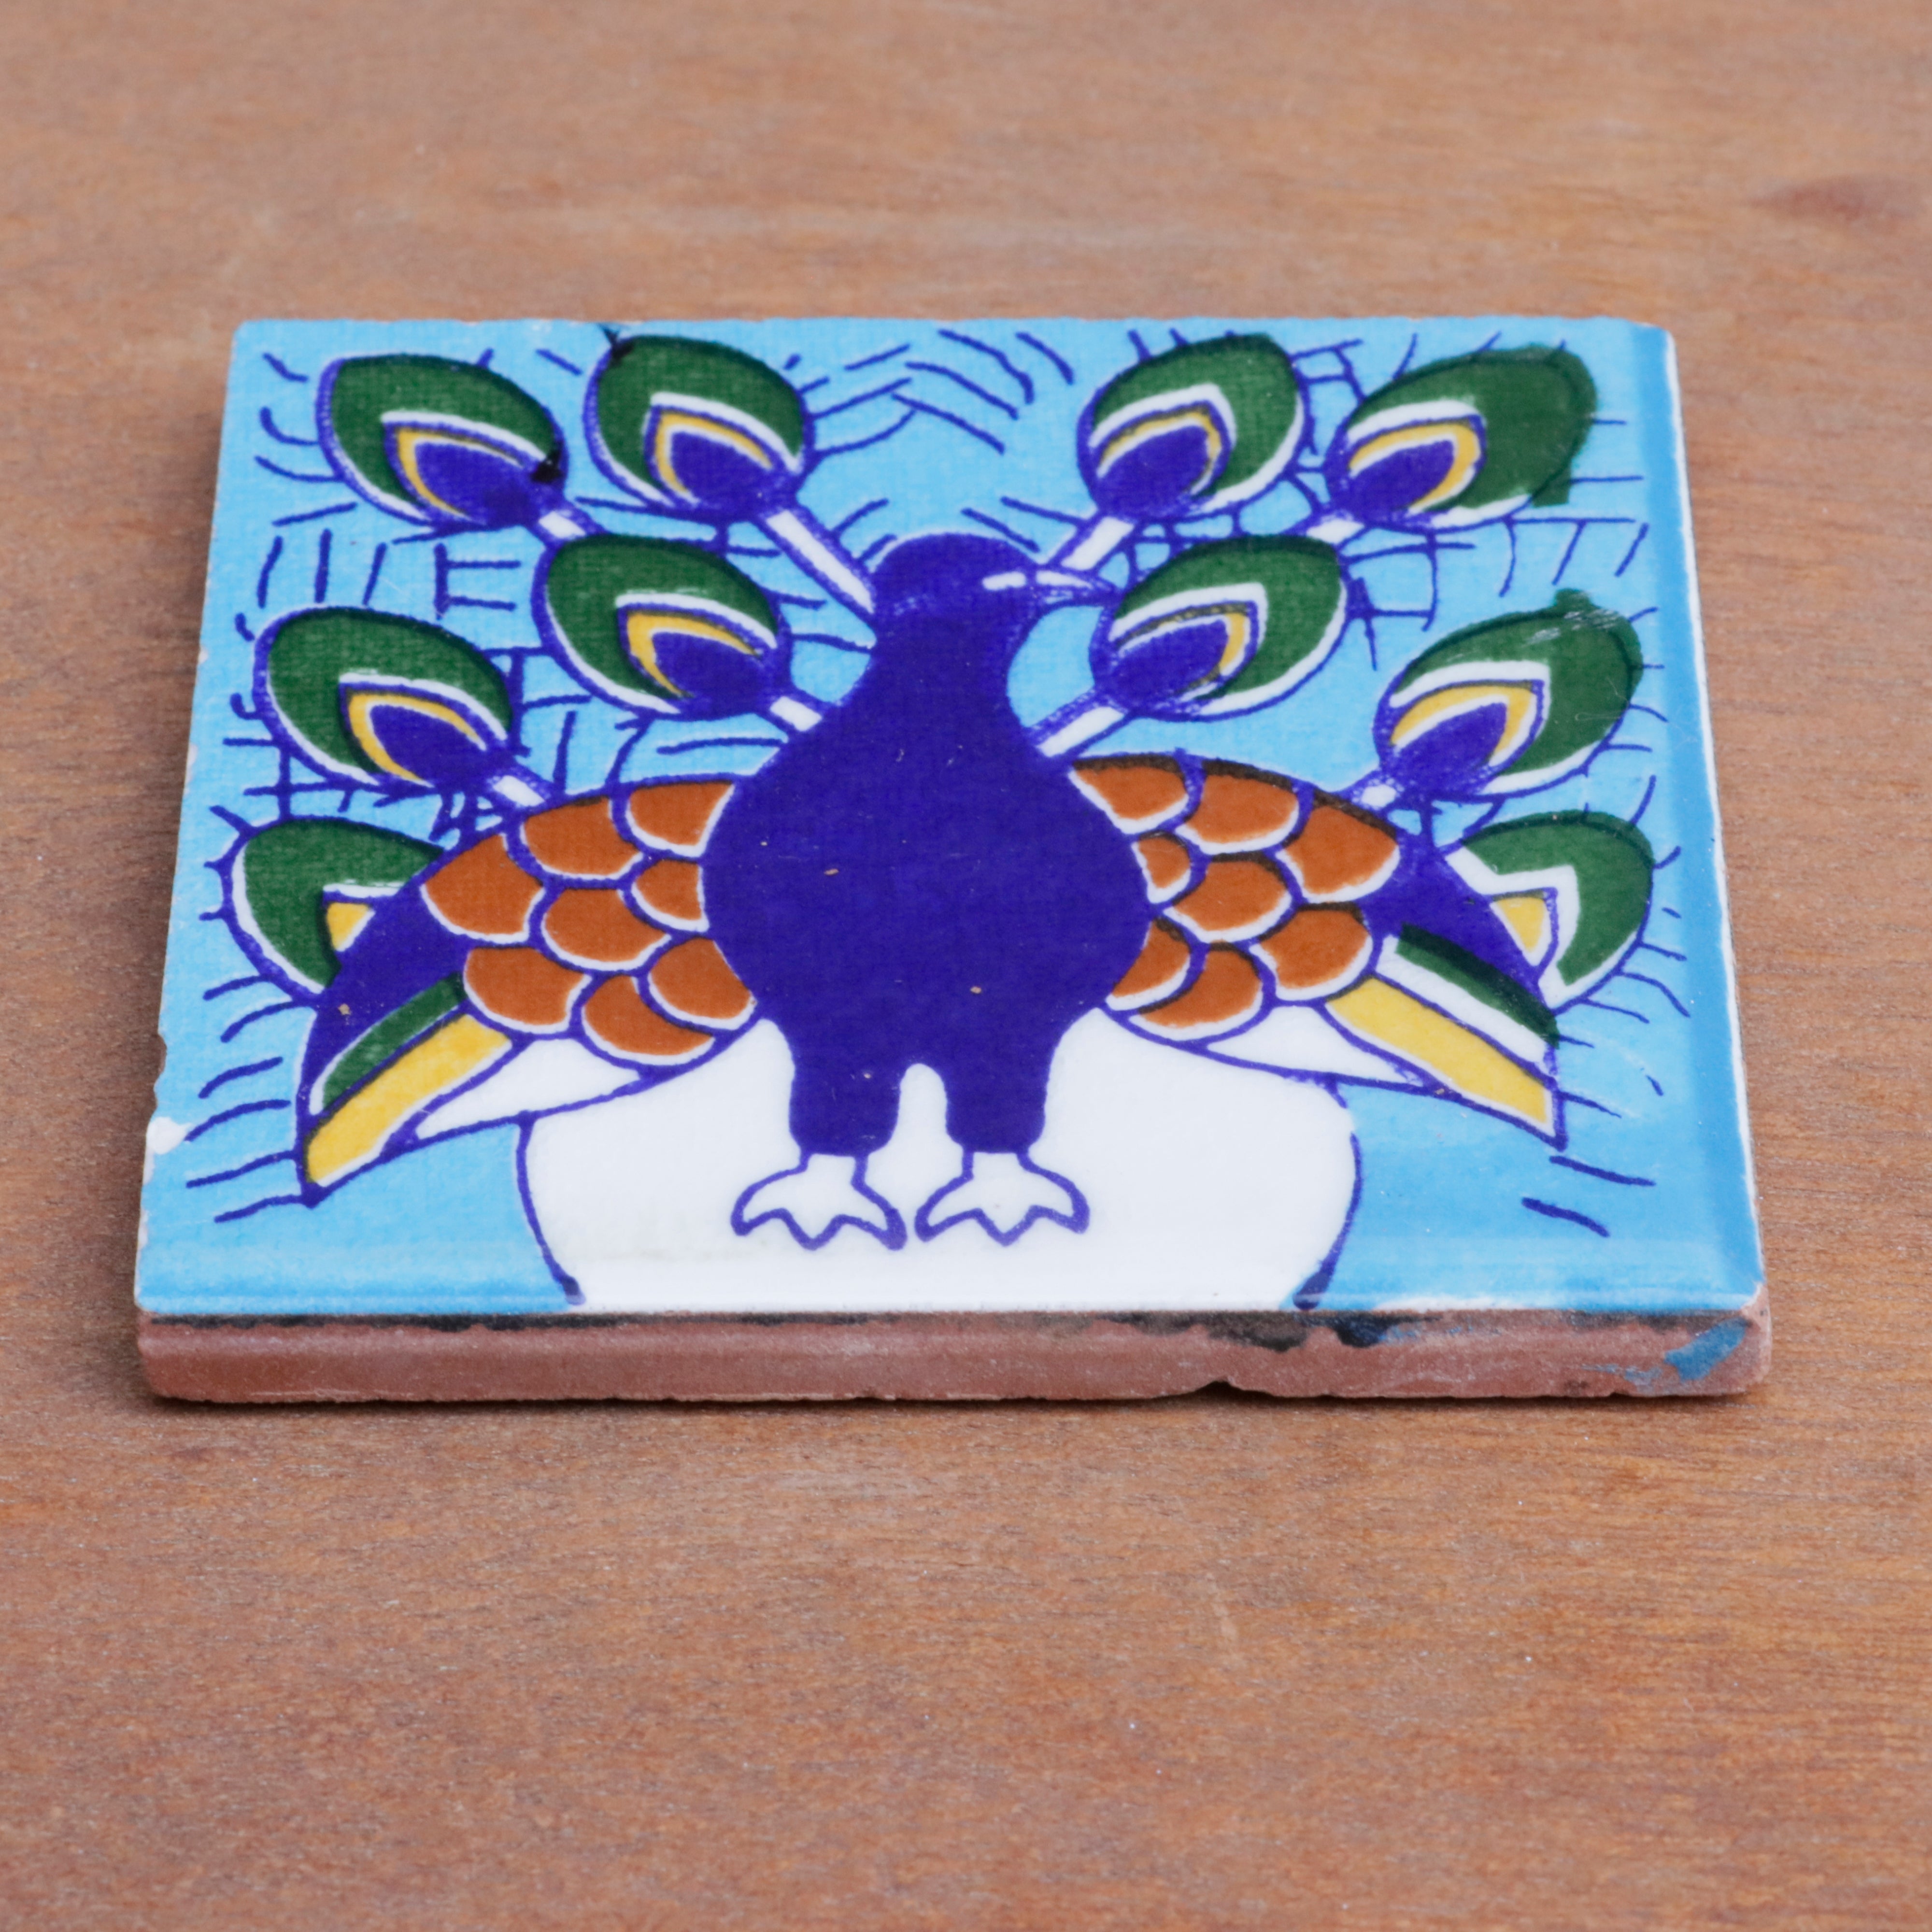 Classic Bold Blue Peacock Designed Ceramic Square Tile Ceramic Tile